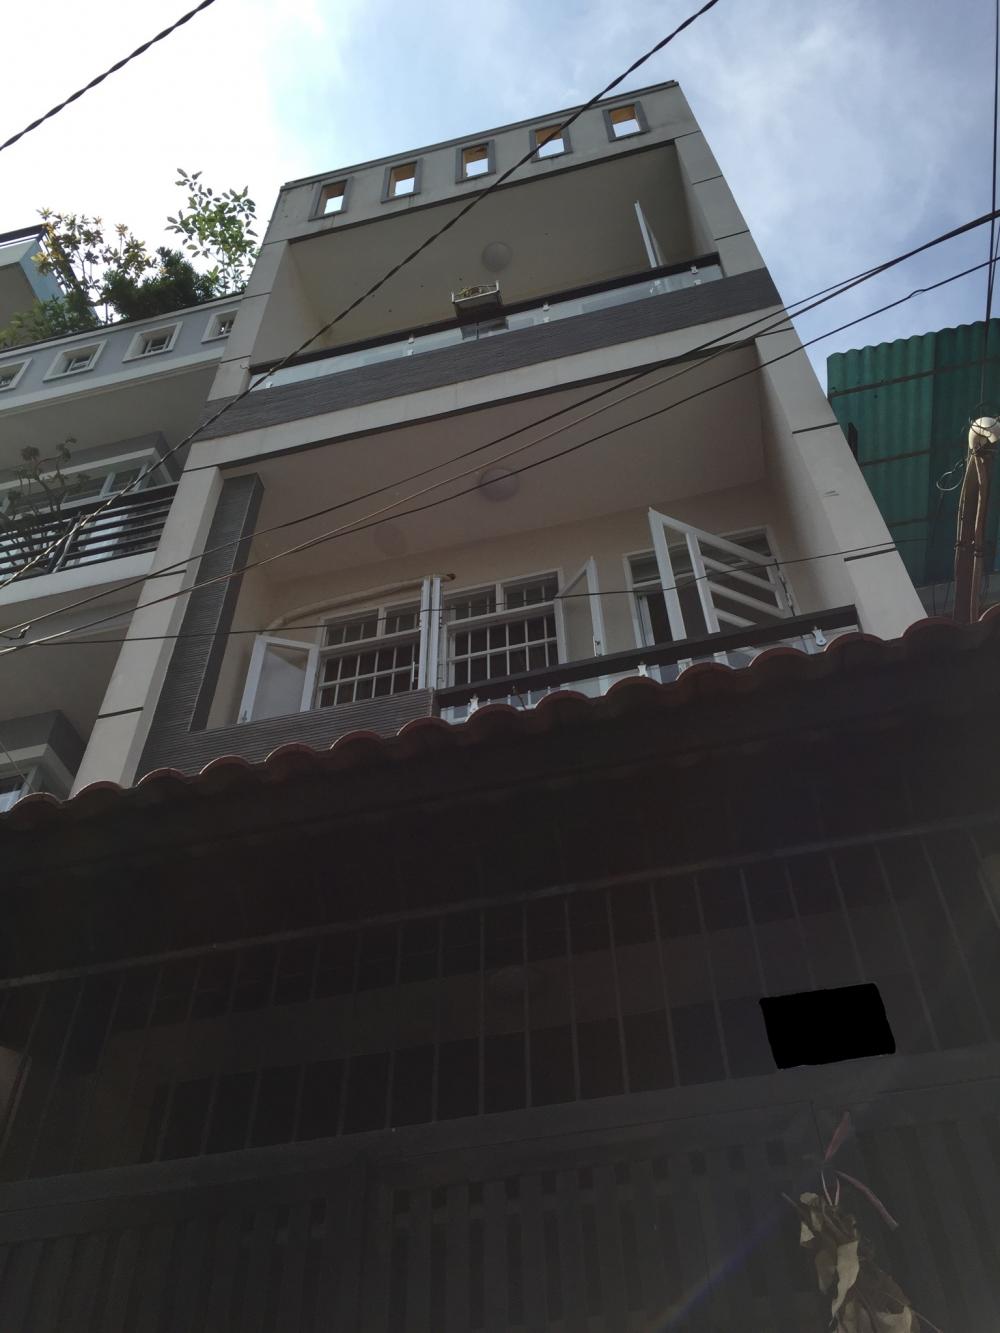 Chủ nhà vì cần tiền nên bán gấp căn nhà MT nội bộ đường Sơn Cang, phường 12, Q. Tân Bình